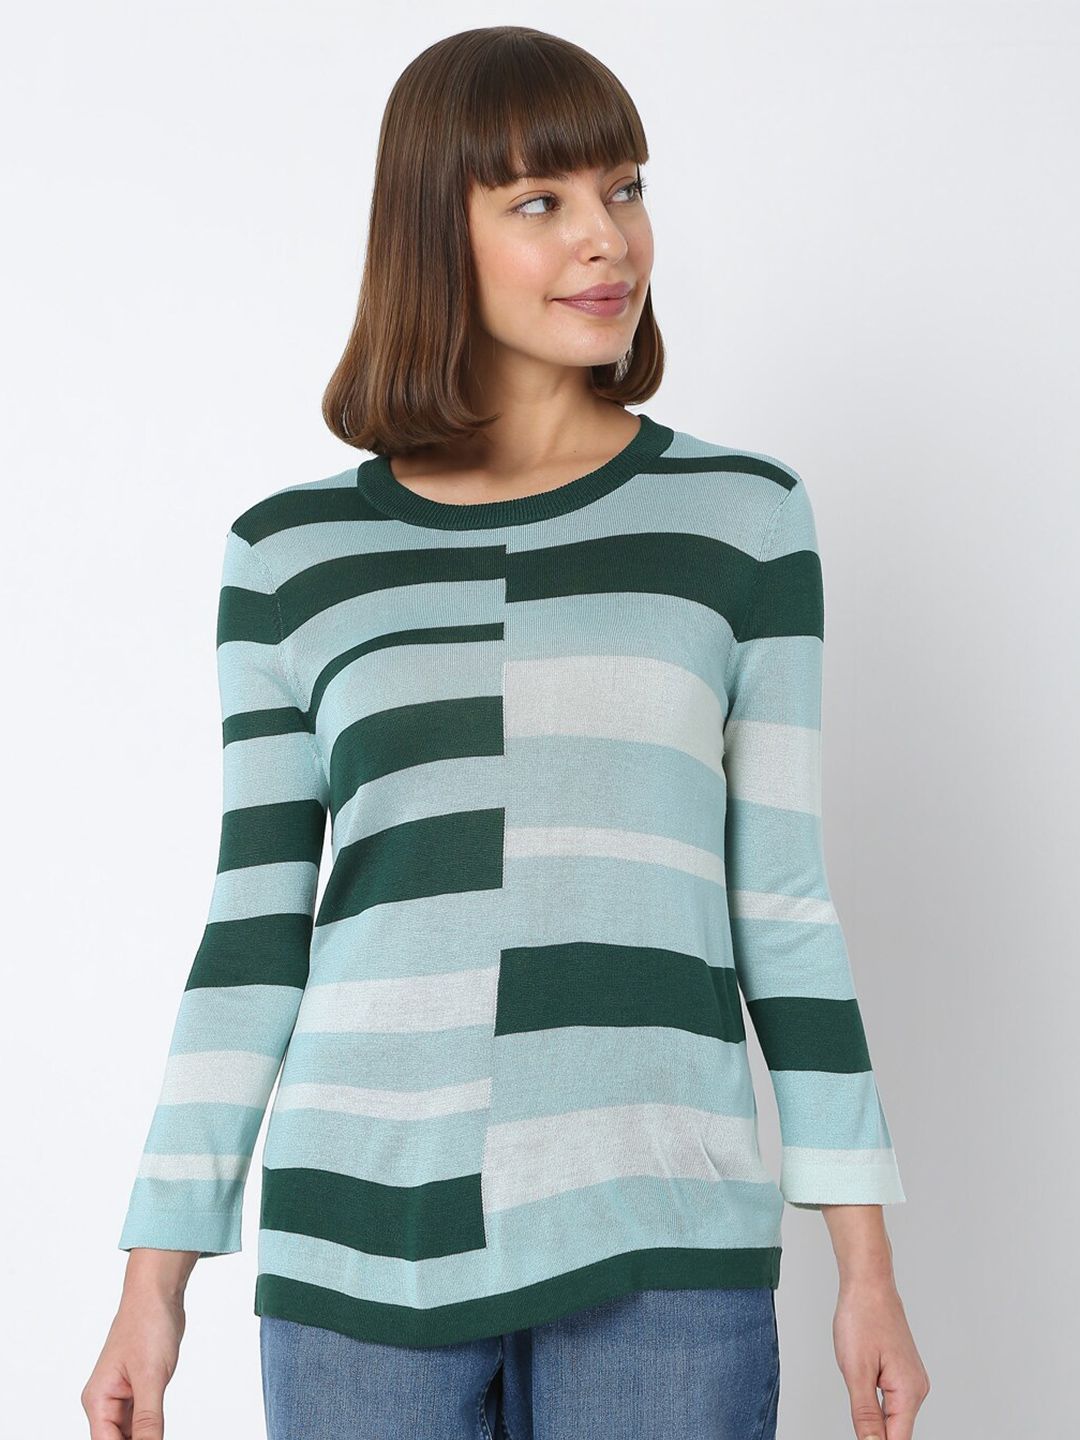 Vero Moda Women Green & Blue Striped Sweater Price in India